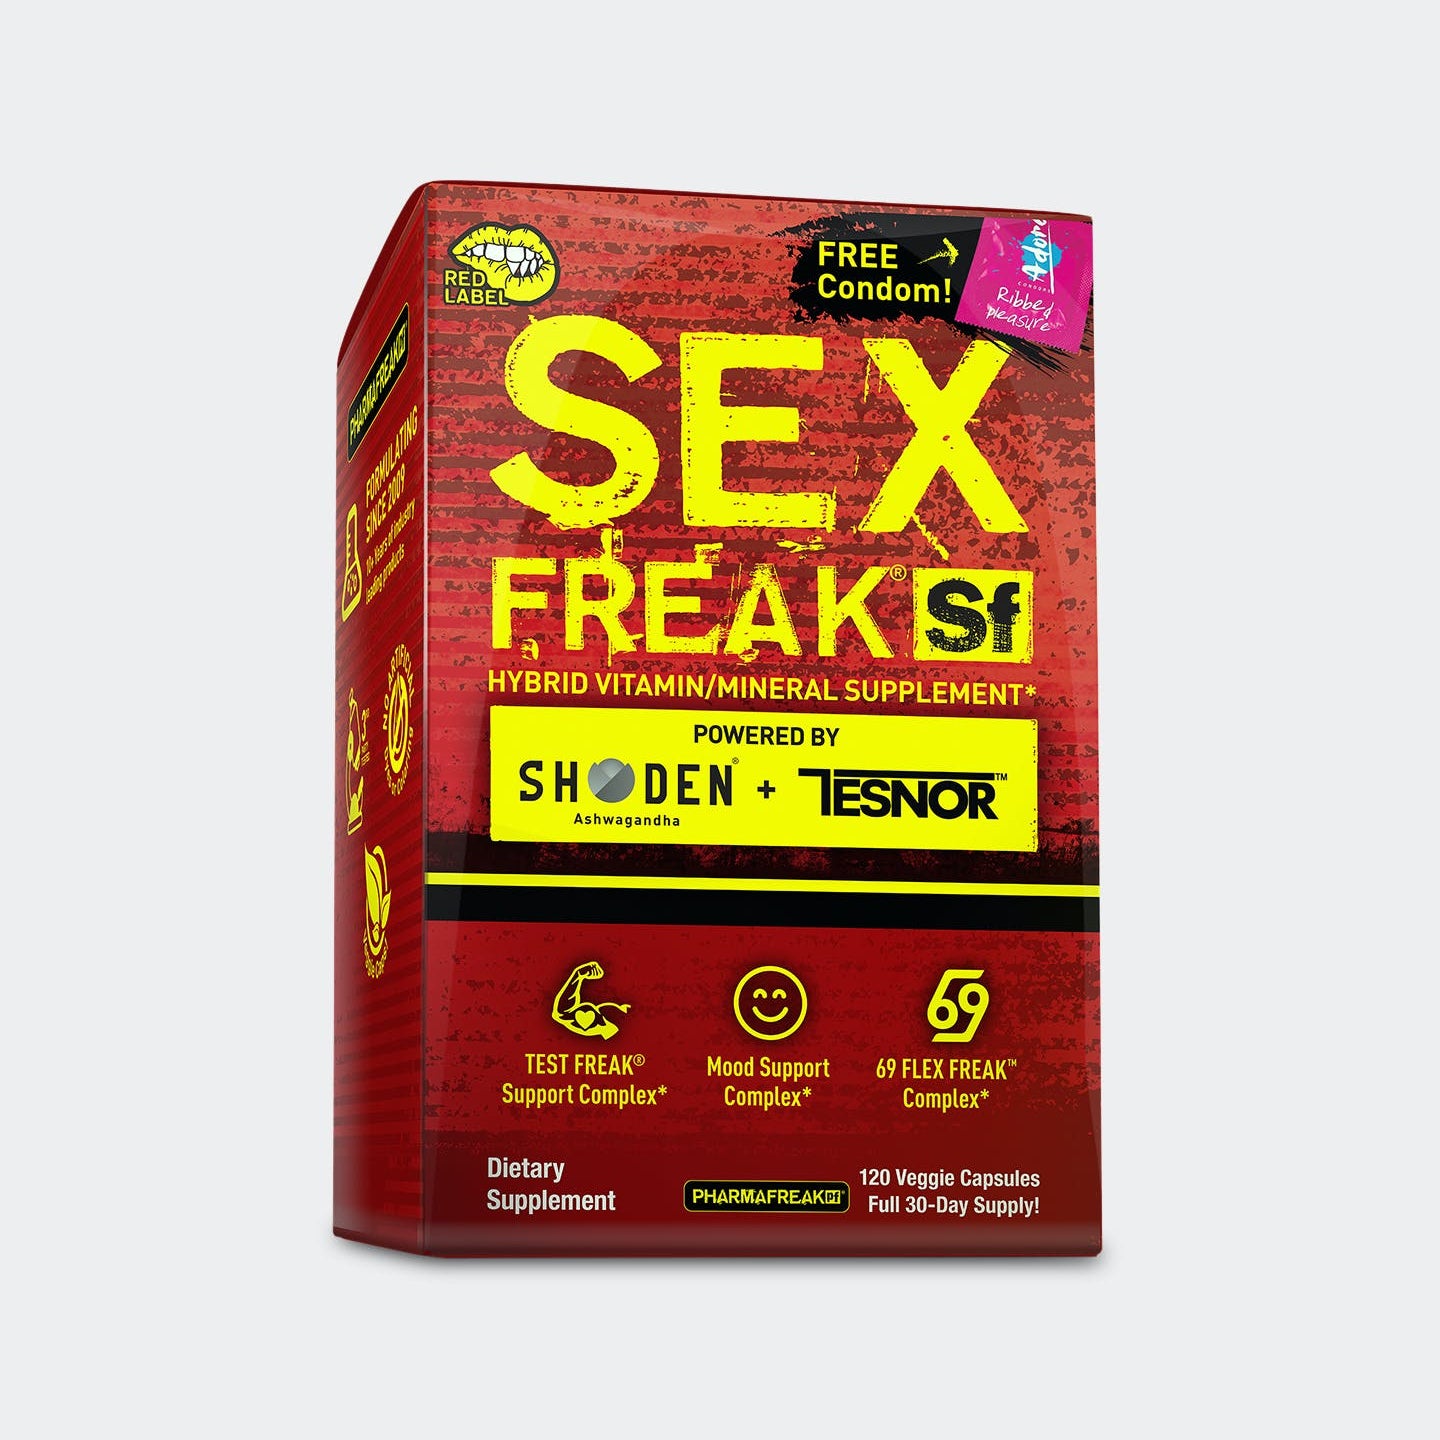 PharmaFreak SEX FREAK RED